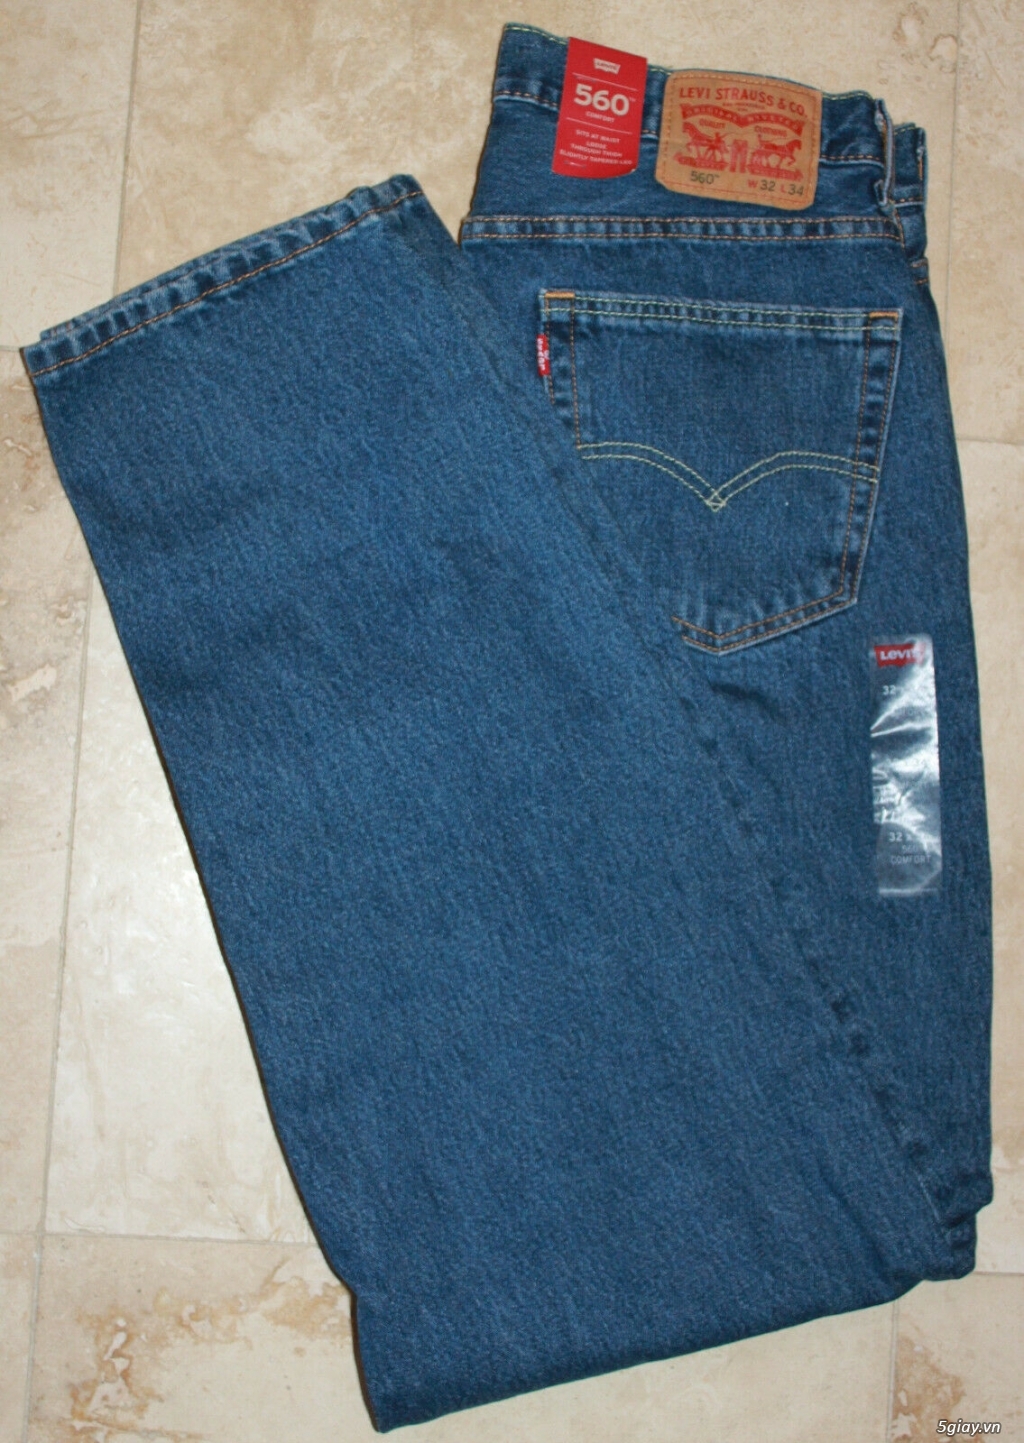 Cần bán quần jeans chính hãng Levi's 560 size 32x34 - 4